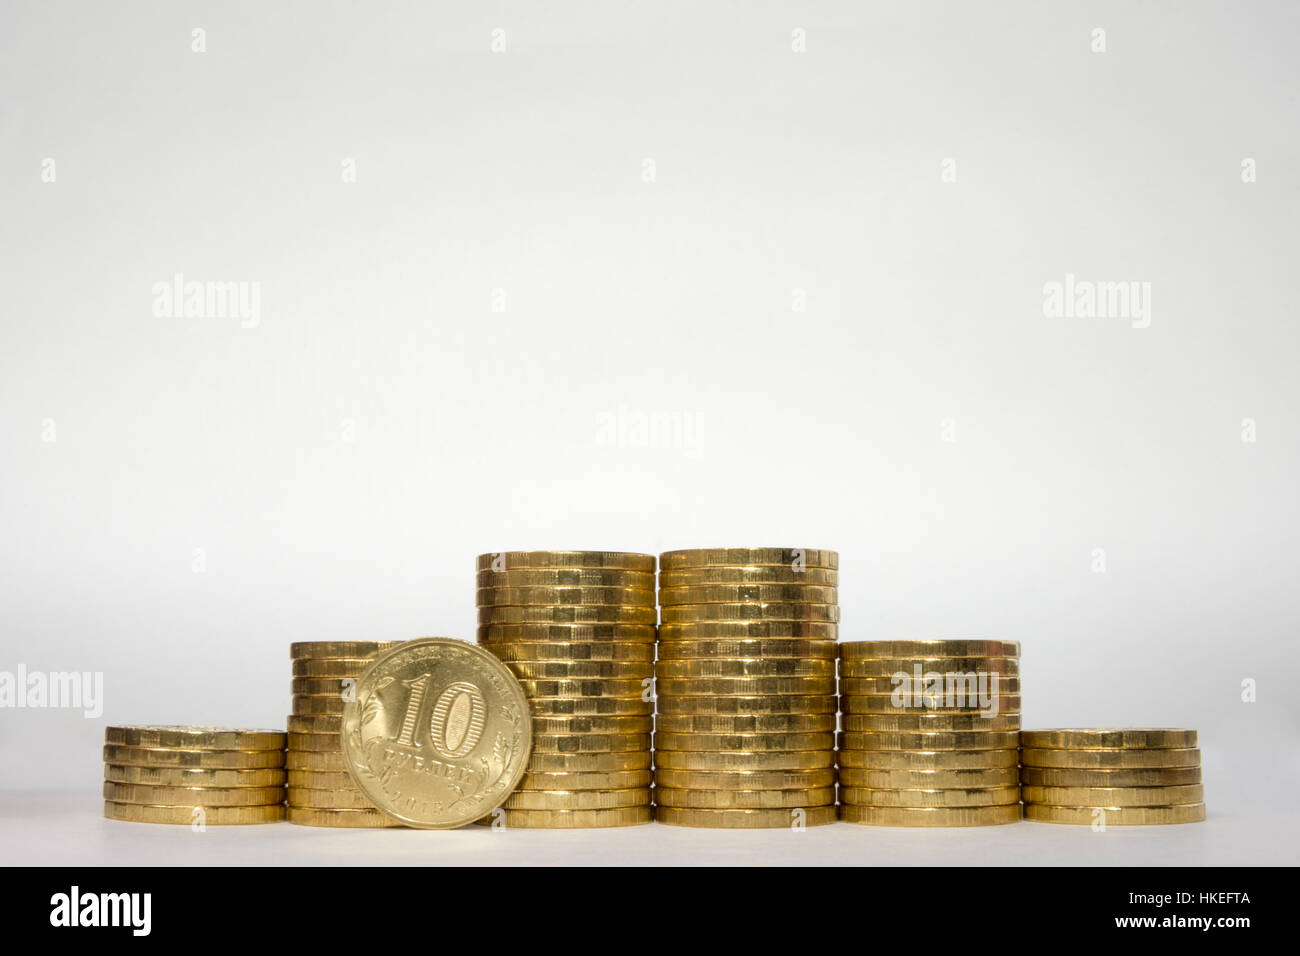 Sechs Stapel von Münzen zunehmender Höhe symmetrisch auf einem weißen Hintergrund, pockennarbige steht am Rande des russischen 10-Rubel-Münze Stockfoto